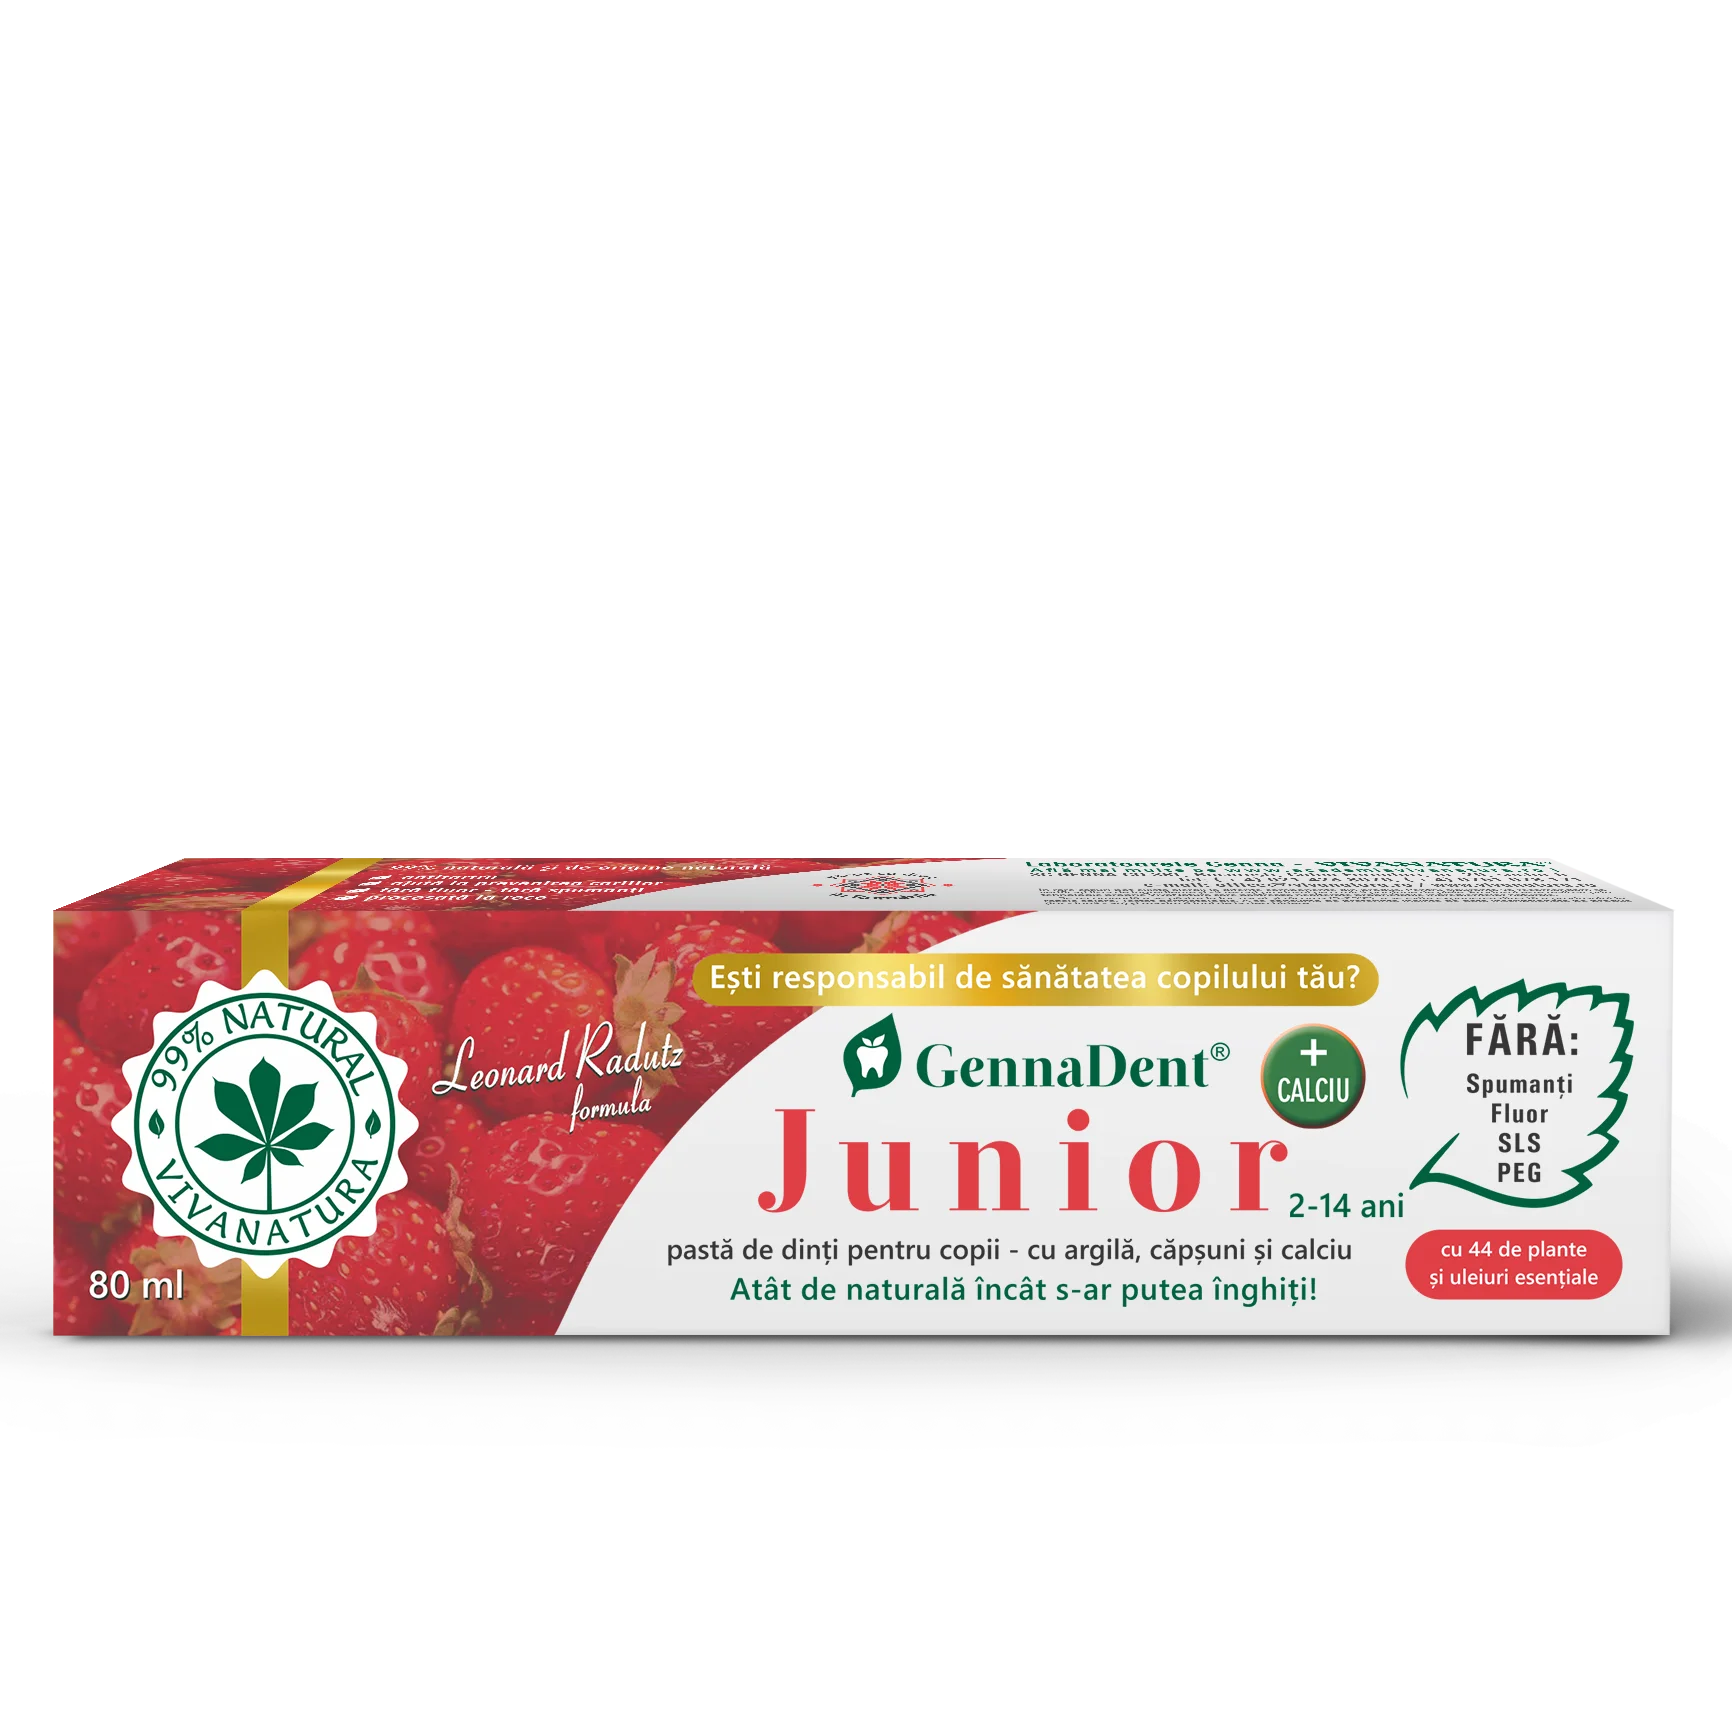 Pasta de dinti GennaDent Junior cu argila si capsuni, 80ml, Vivanatura